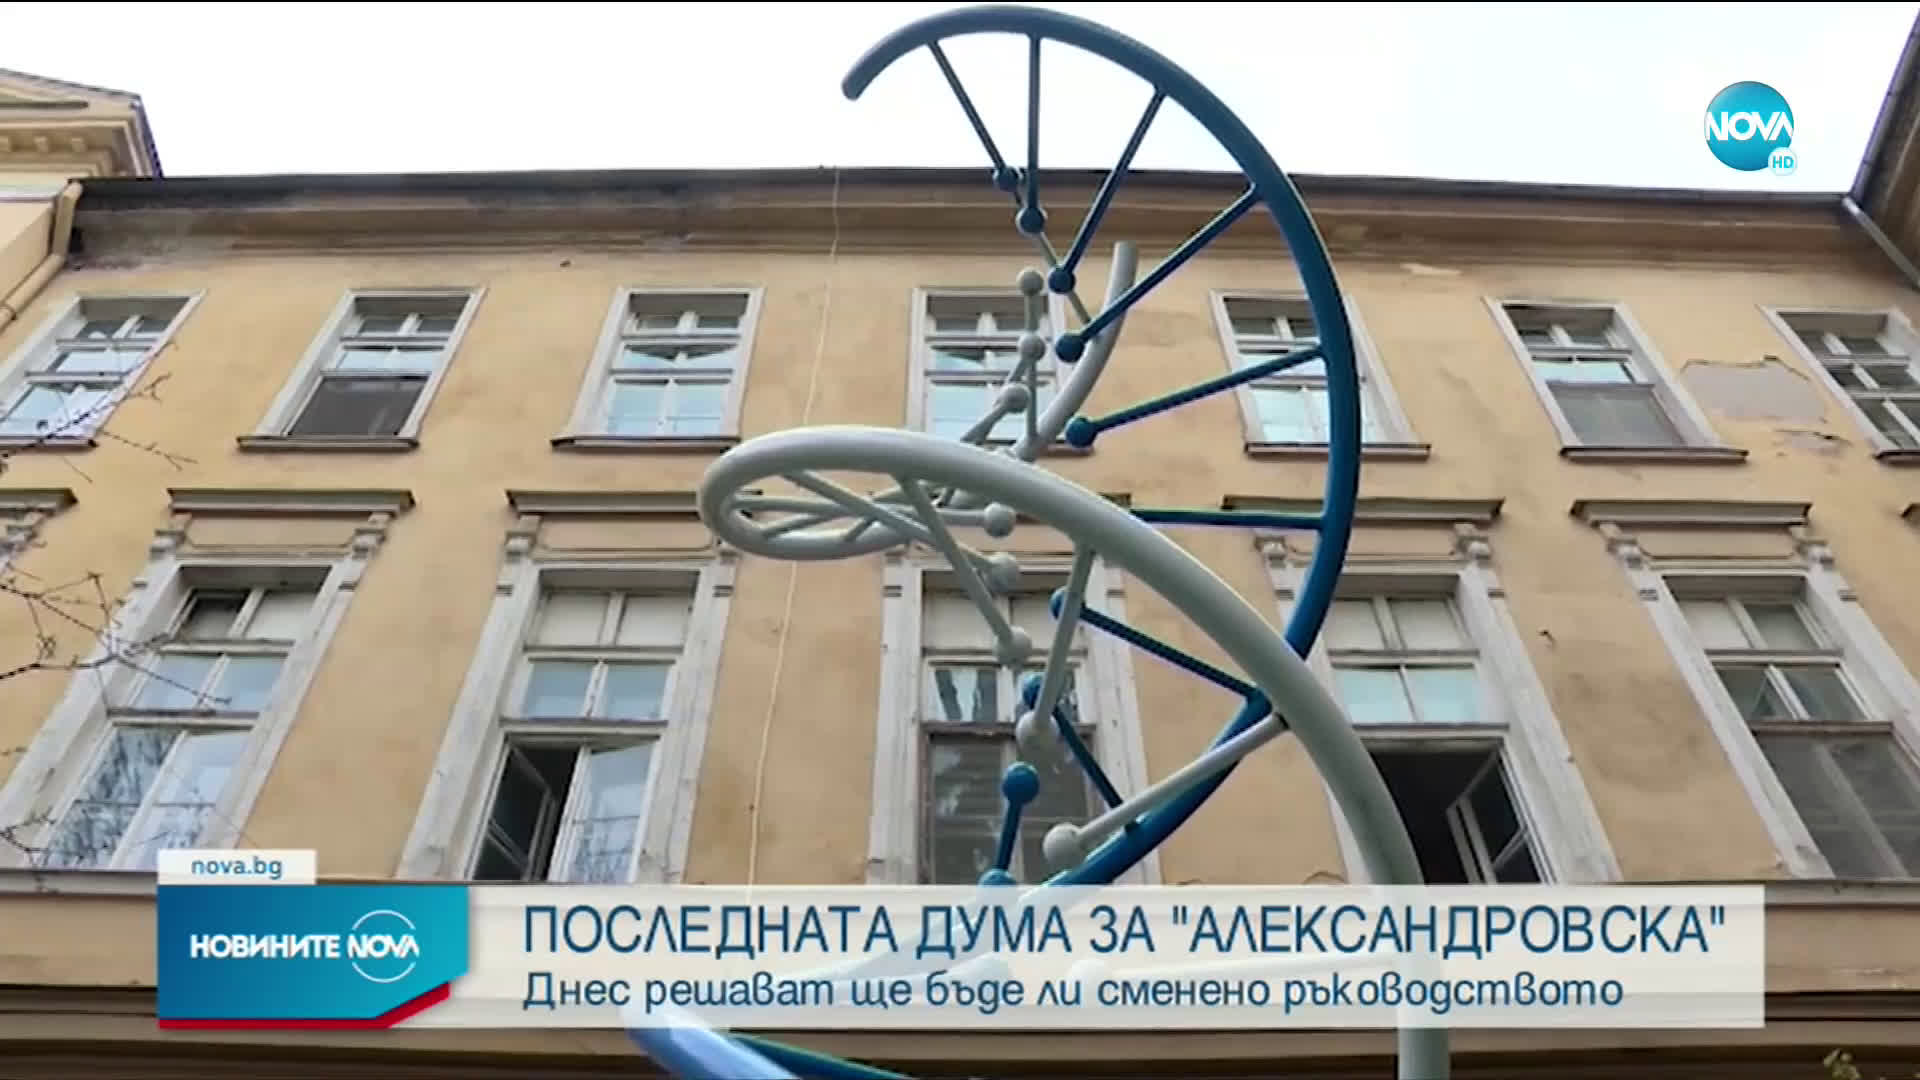 Днес решават ще бъде ли сменено ръководството на "Александровска" болница